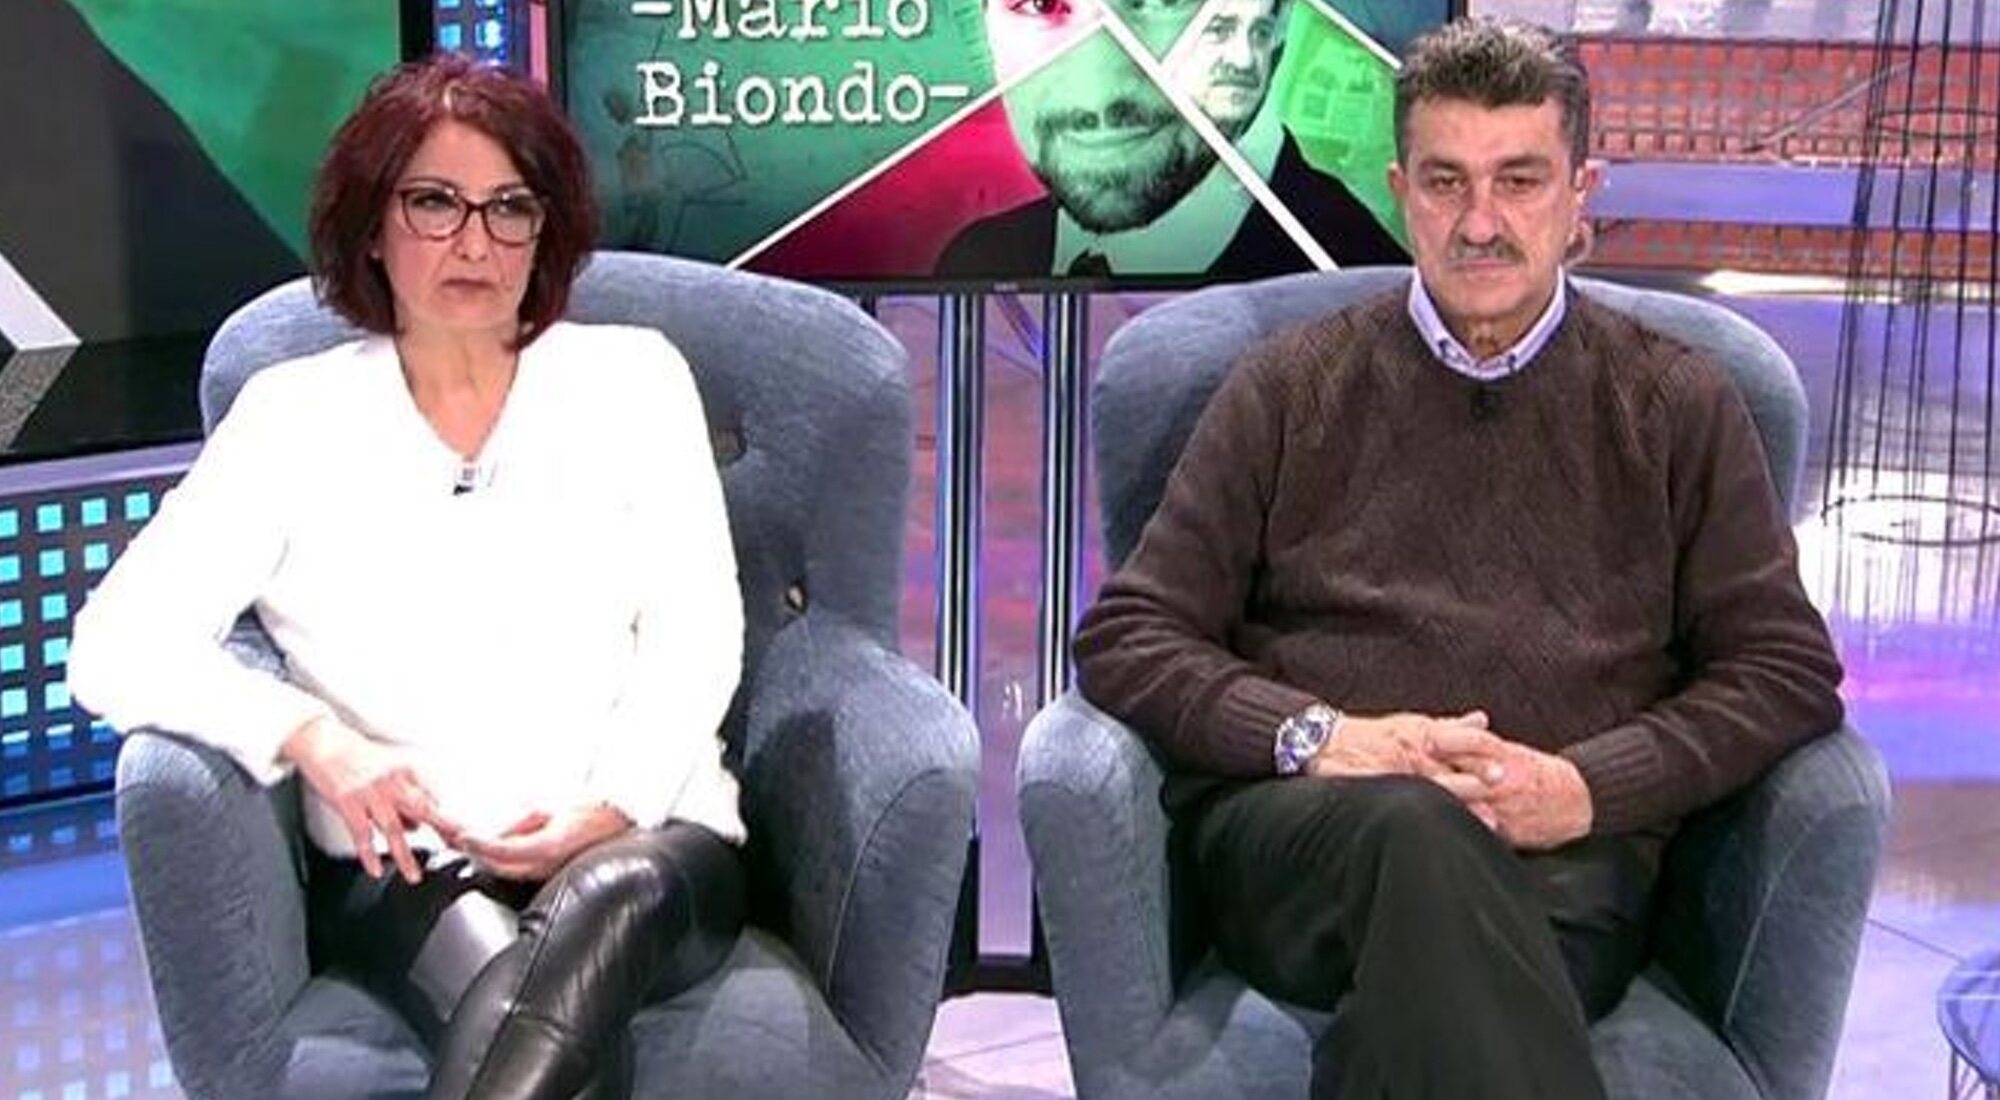 Los padres de Mario Biondo se sienta en 'Sábado deluxe'